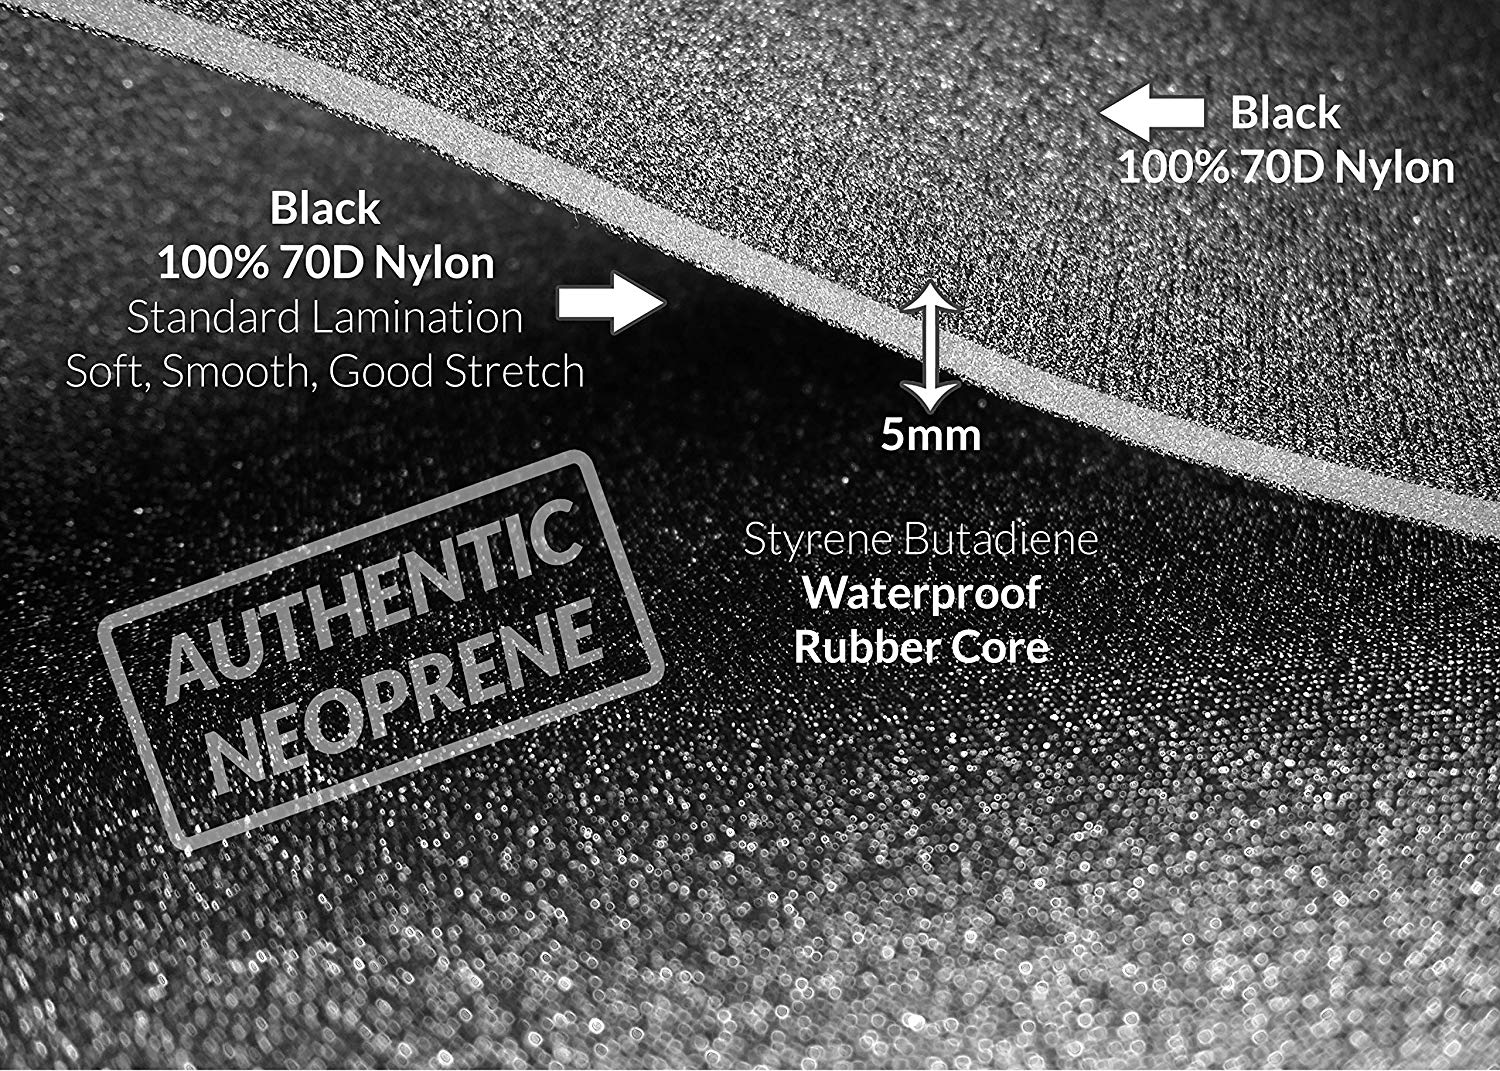 waterproof neoprene rubber sheet sponge rubber sheet for knee support-4